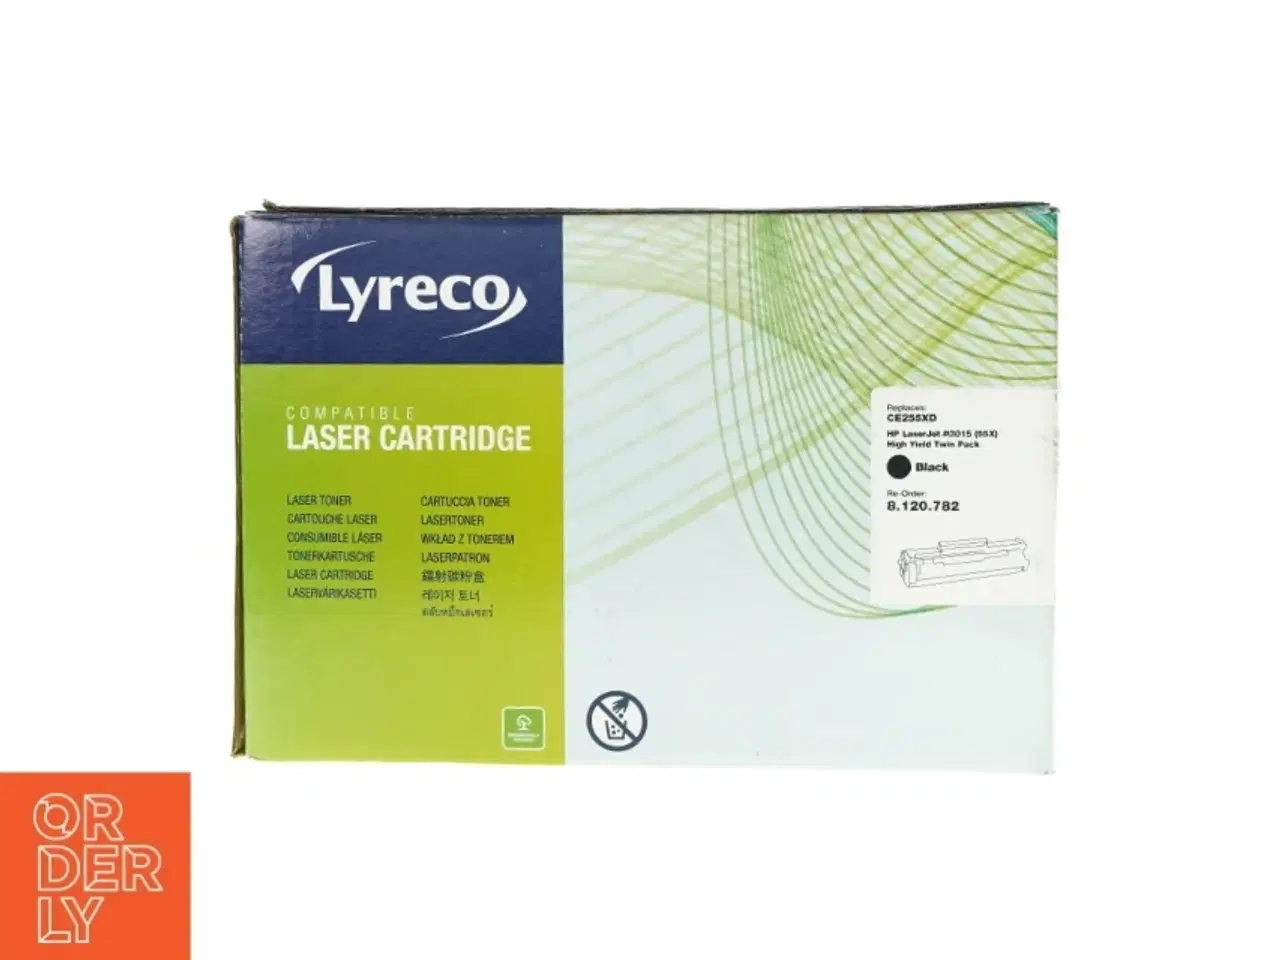 Billede 1 - Laser cartridge patron fra Lyreco